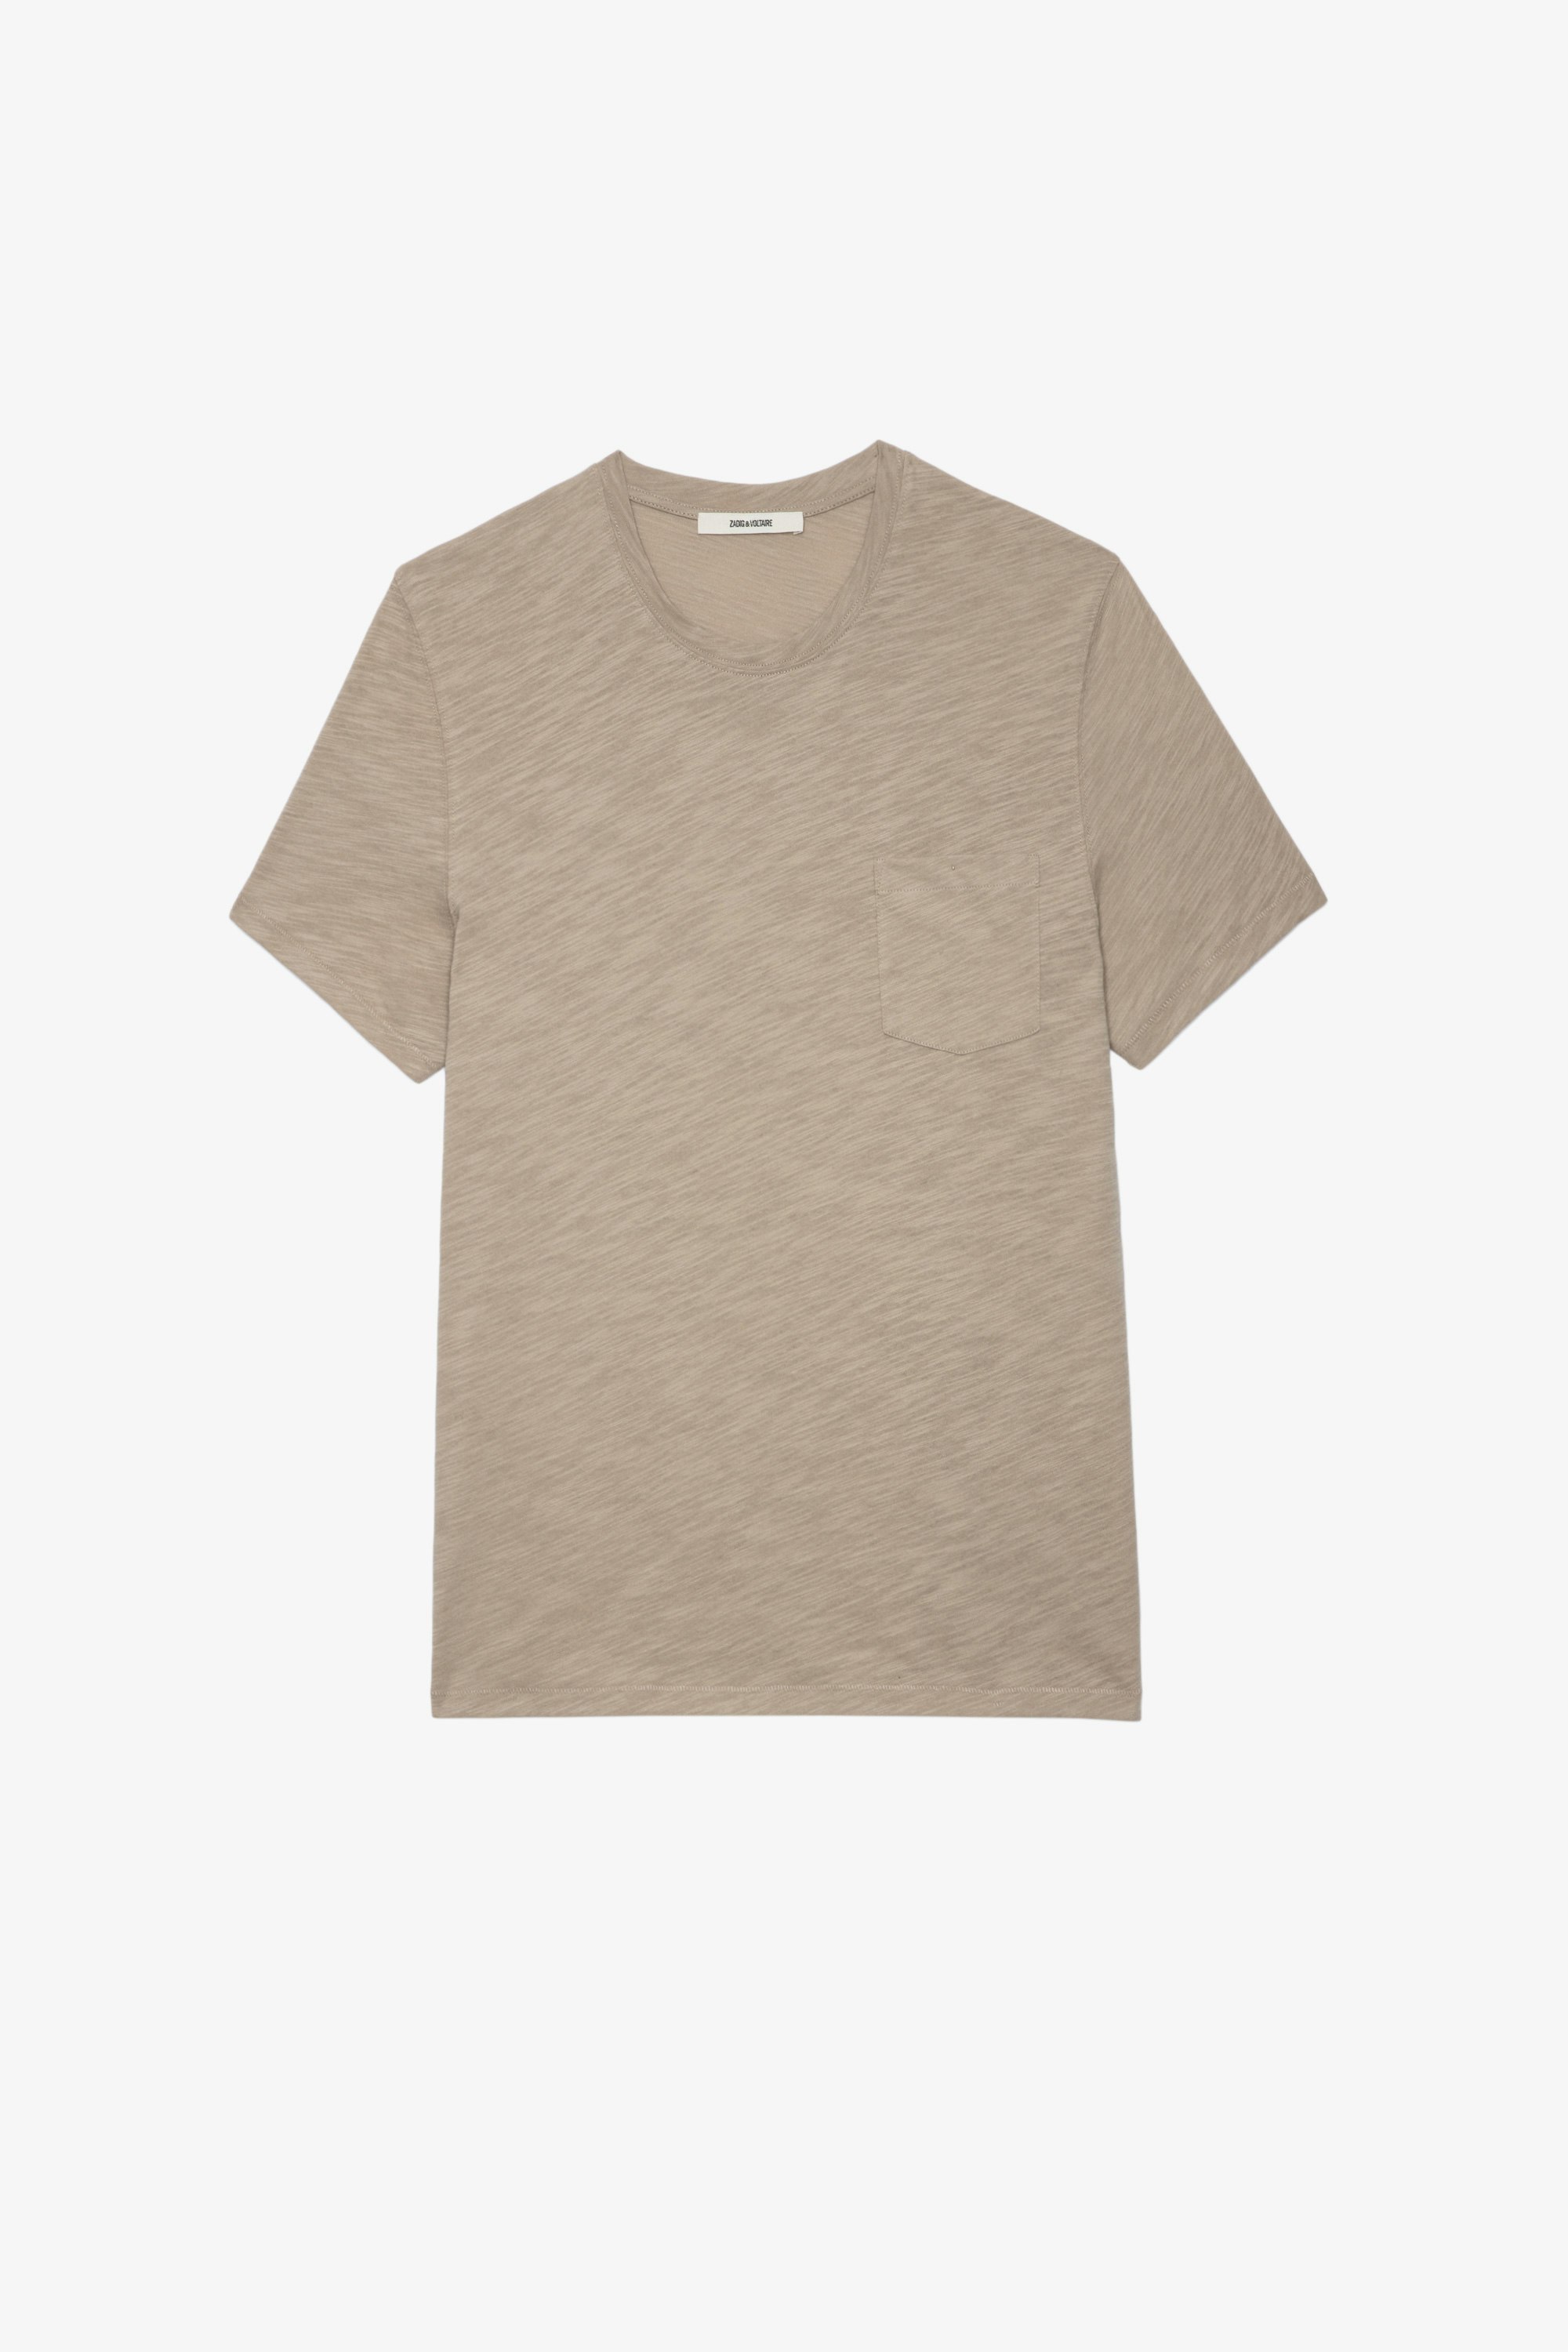 T-Shirt Stockholm Geflammt Herren-T-Shirt aus beigefarbener, geflammter Baumwolle mit Totenkopfprint auf dem Rücken